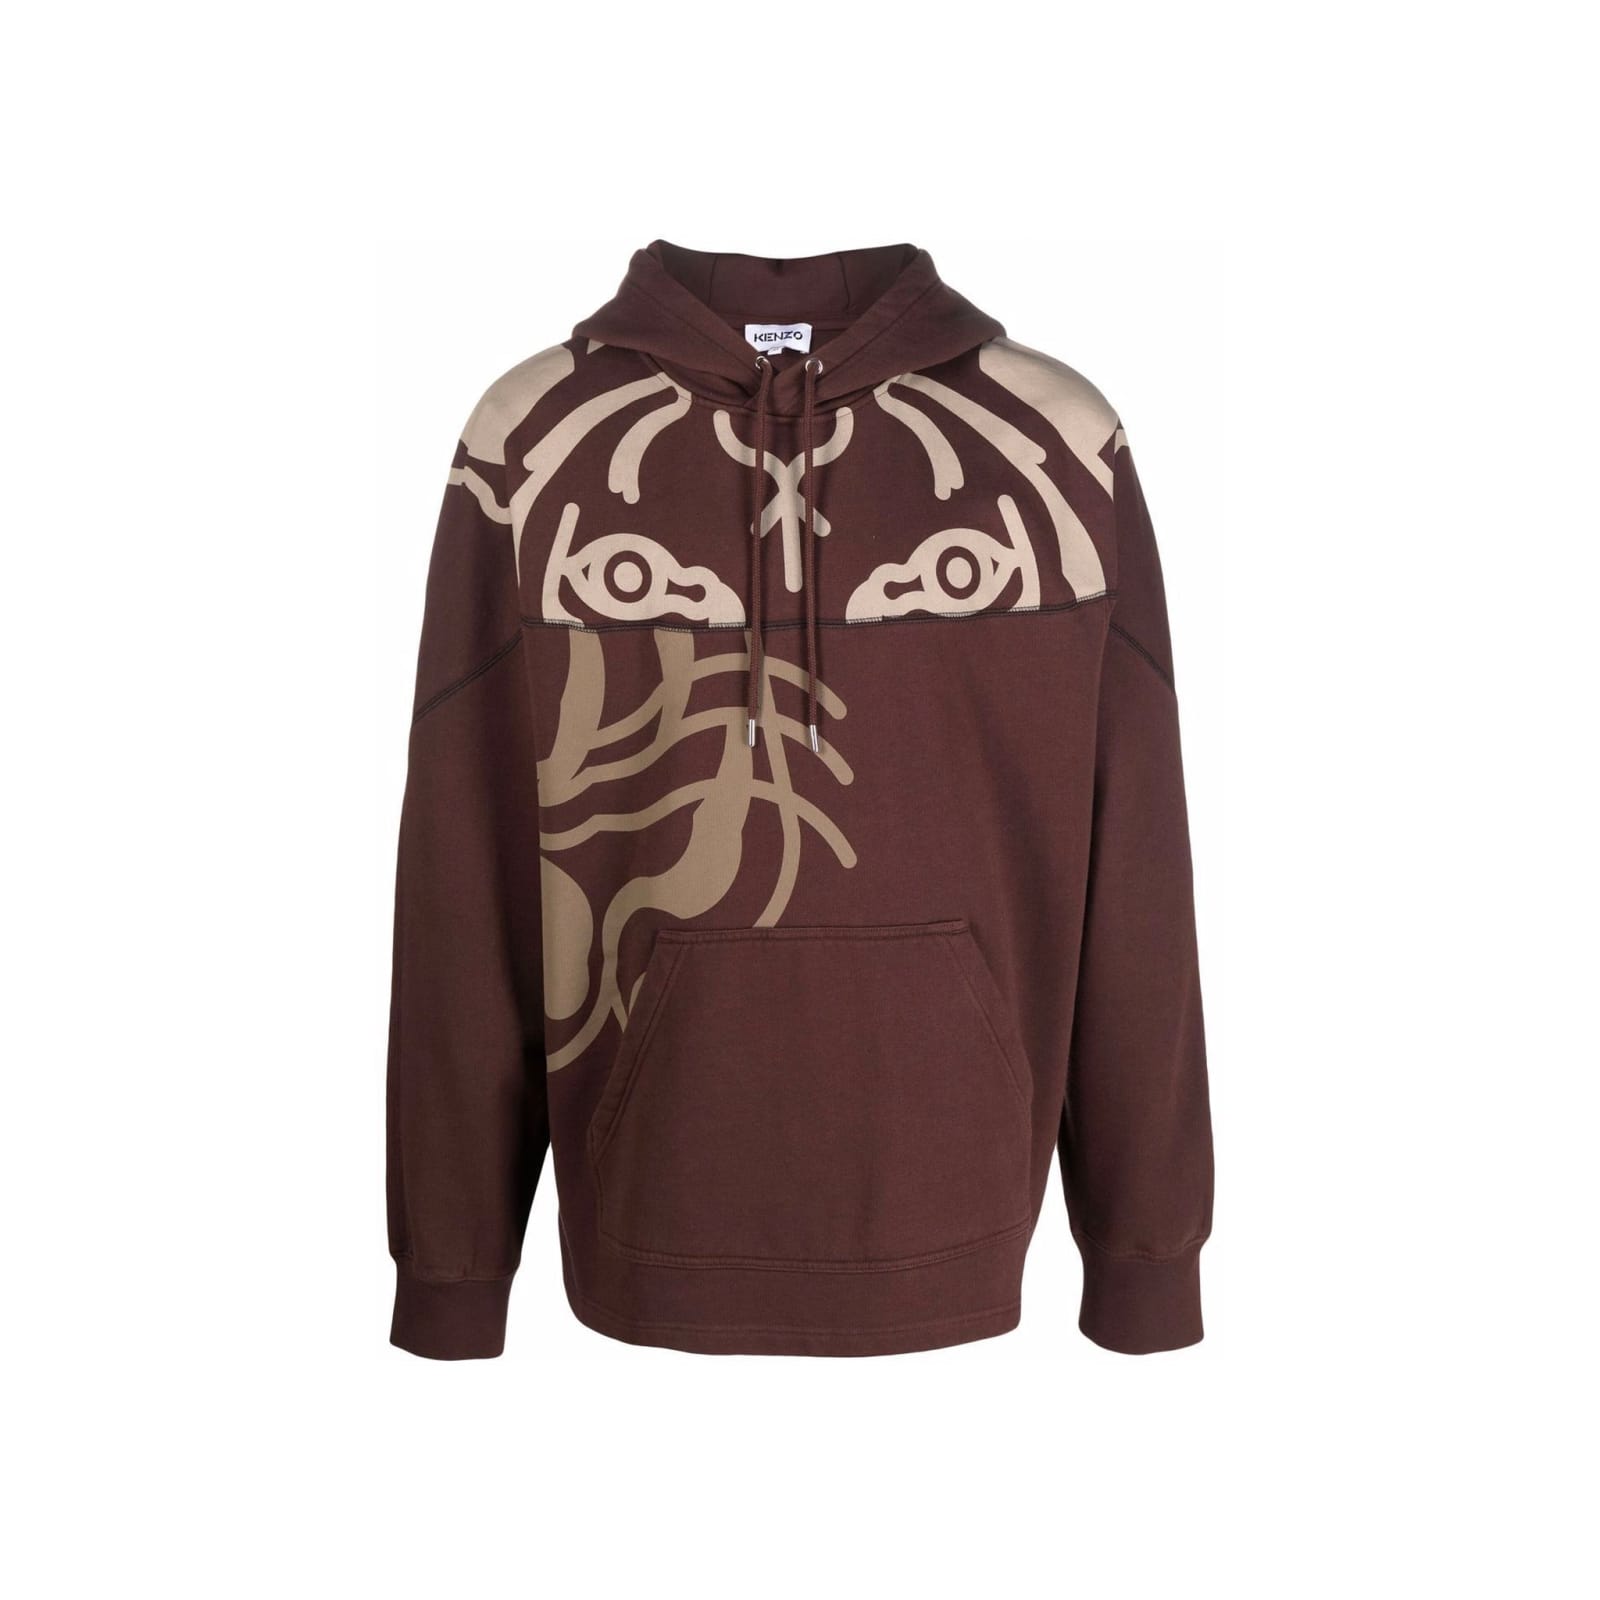 Tiger-print Pullover Hoodie Sweatshirt